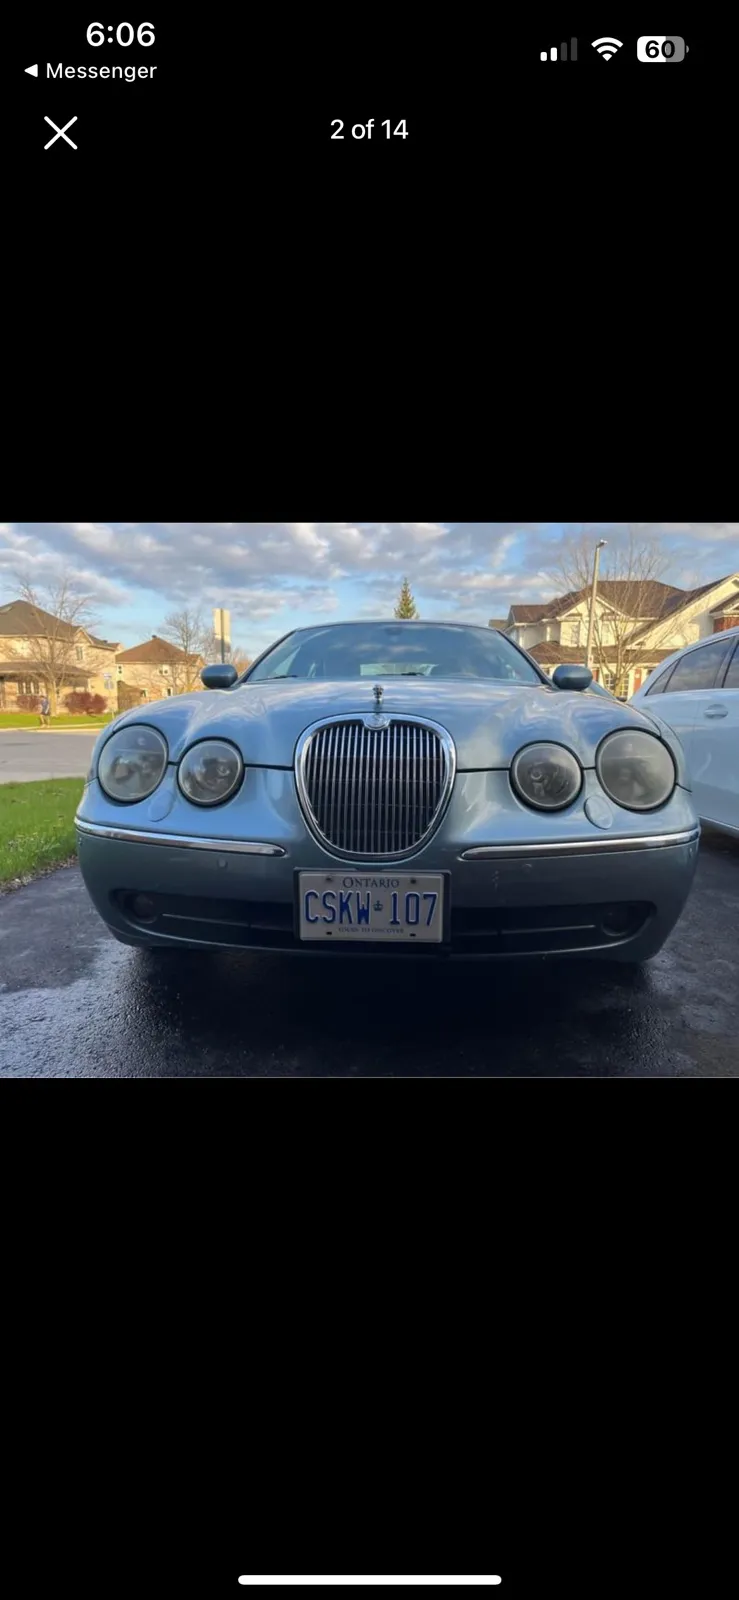 05 Jaguar S-Type v8